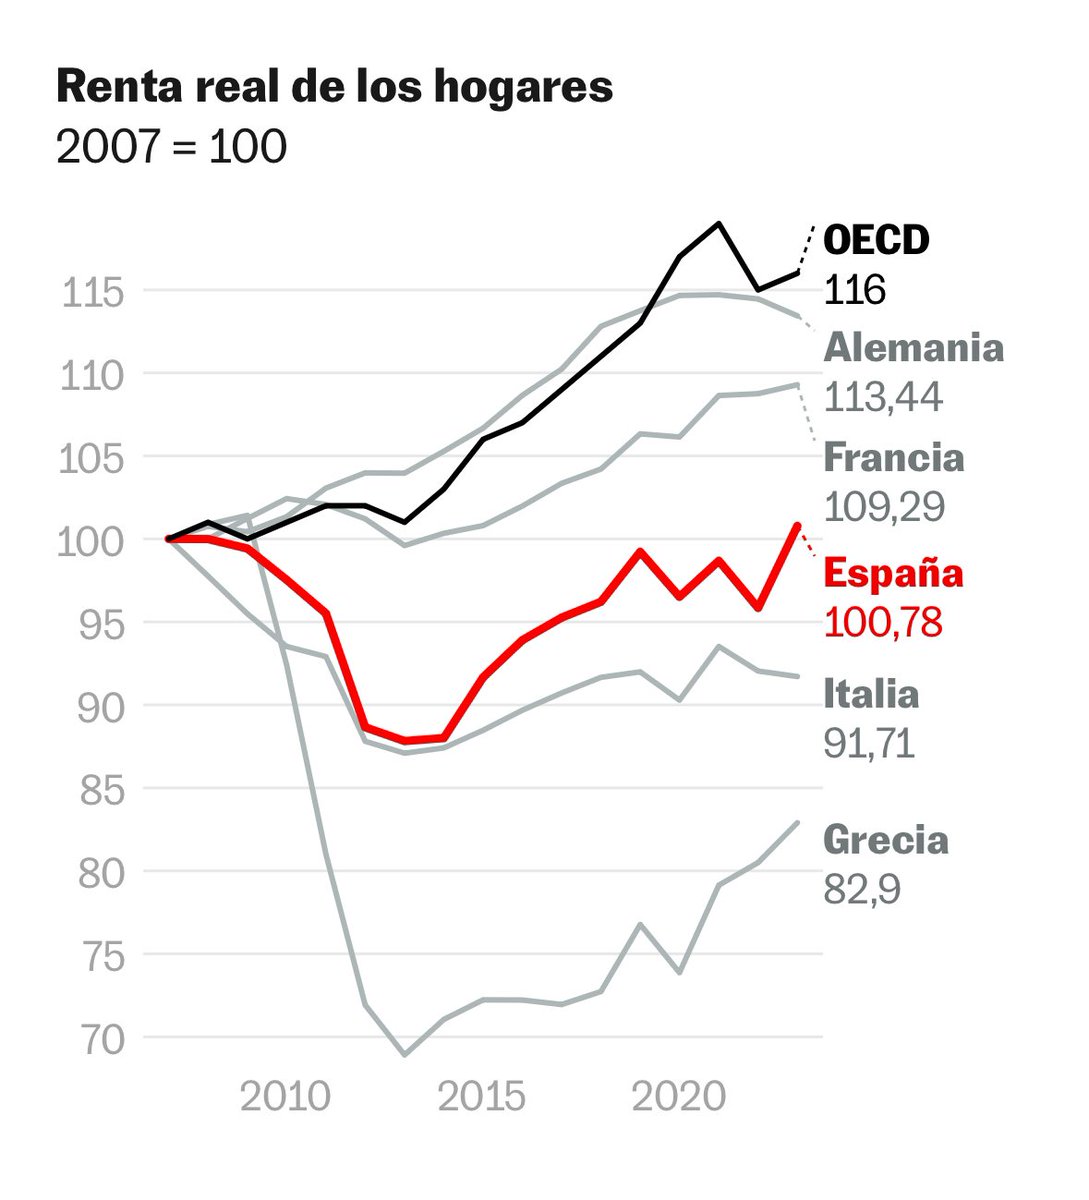 El propio gráfico de la noticia muestra cómo España se ha quedado retrasada respecto a la OCDE. No solo eso, sino que, mientras Sánchez critica las políticas del PP, se aprecia que el estancamiento llega después de 2018... cuando se dejan de aplicar las políticas del PP.